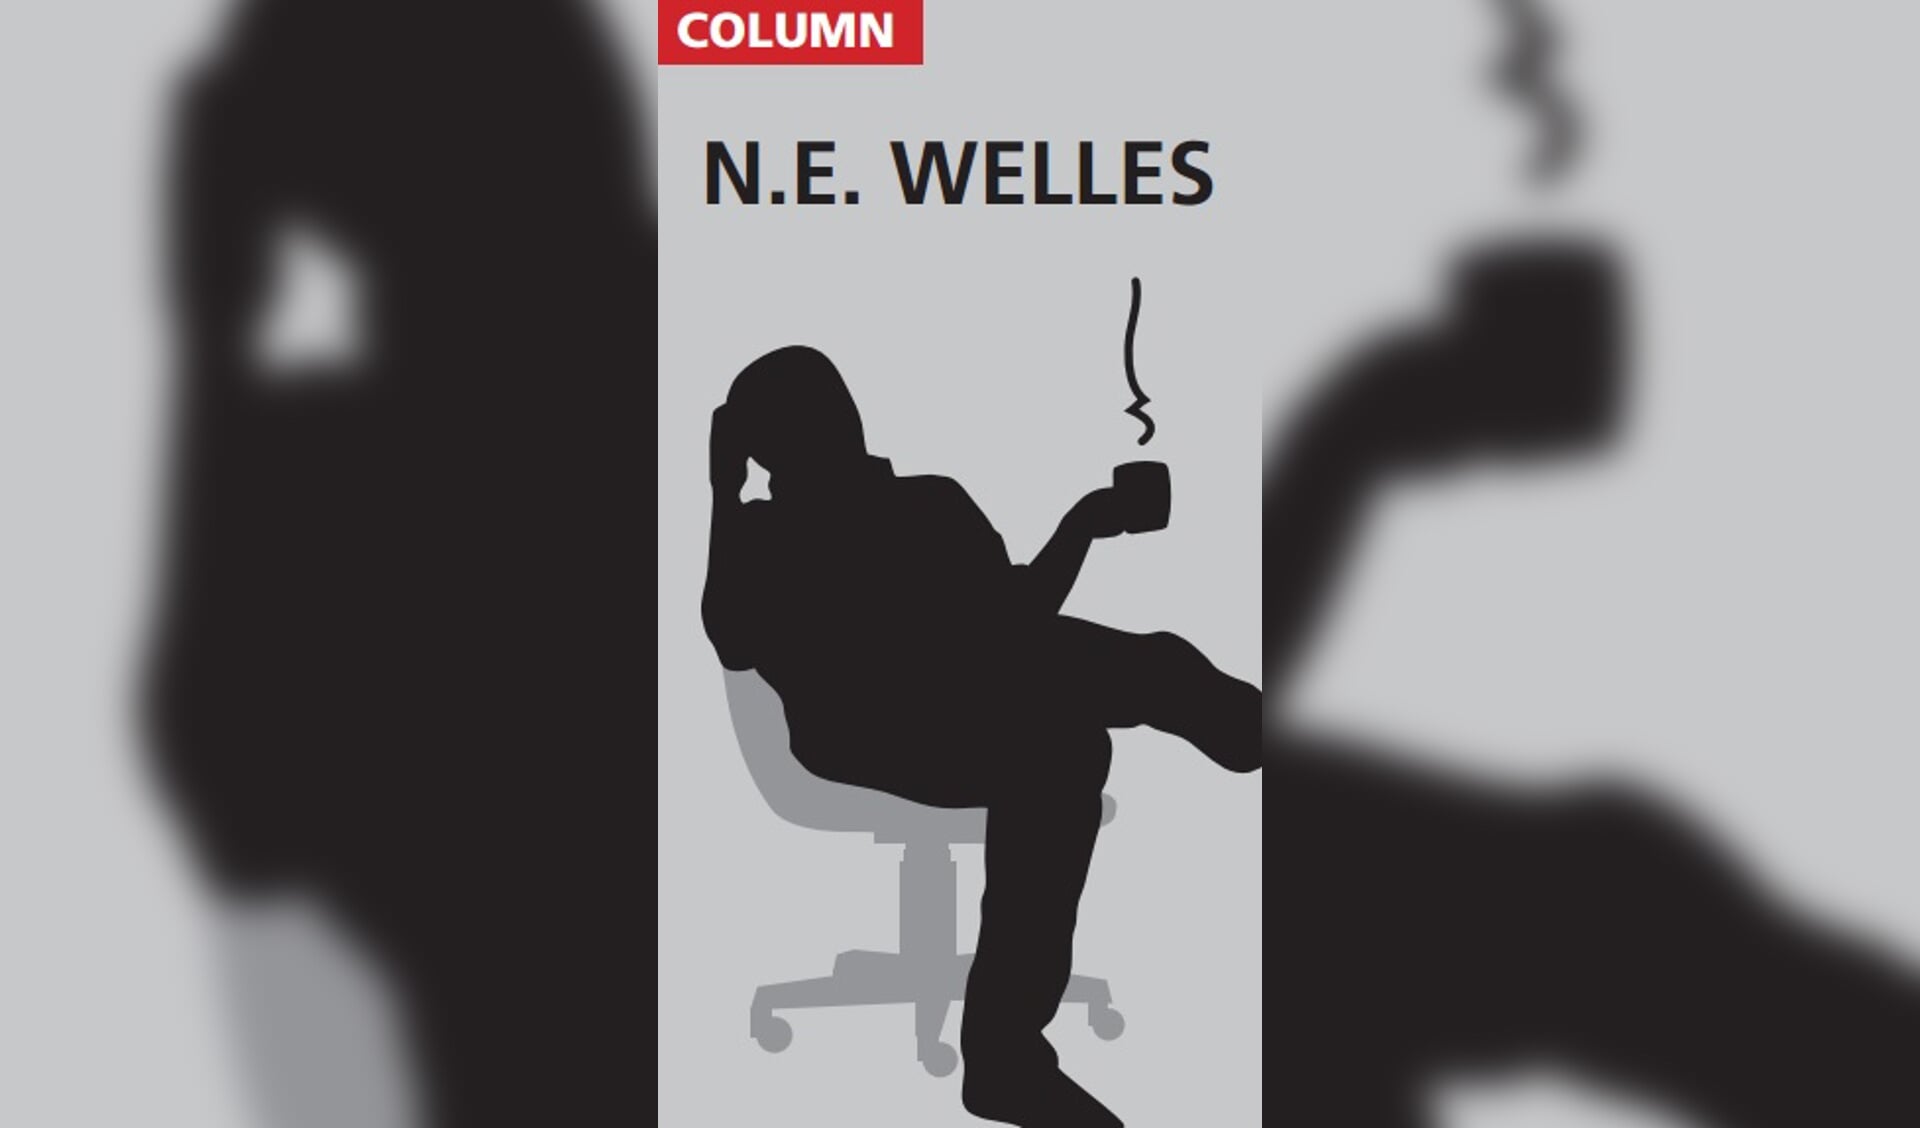 N.E. Welles